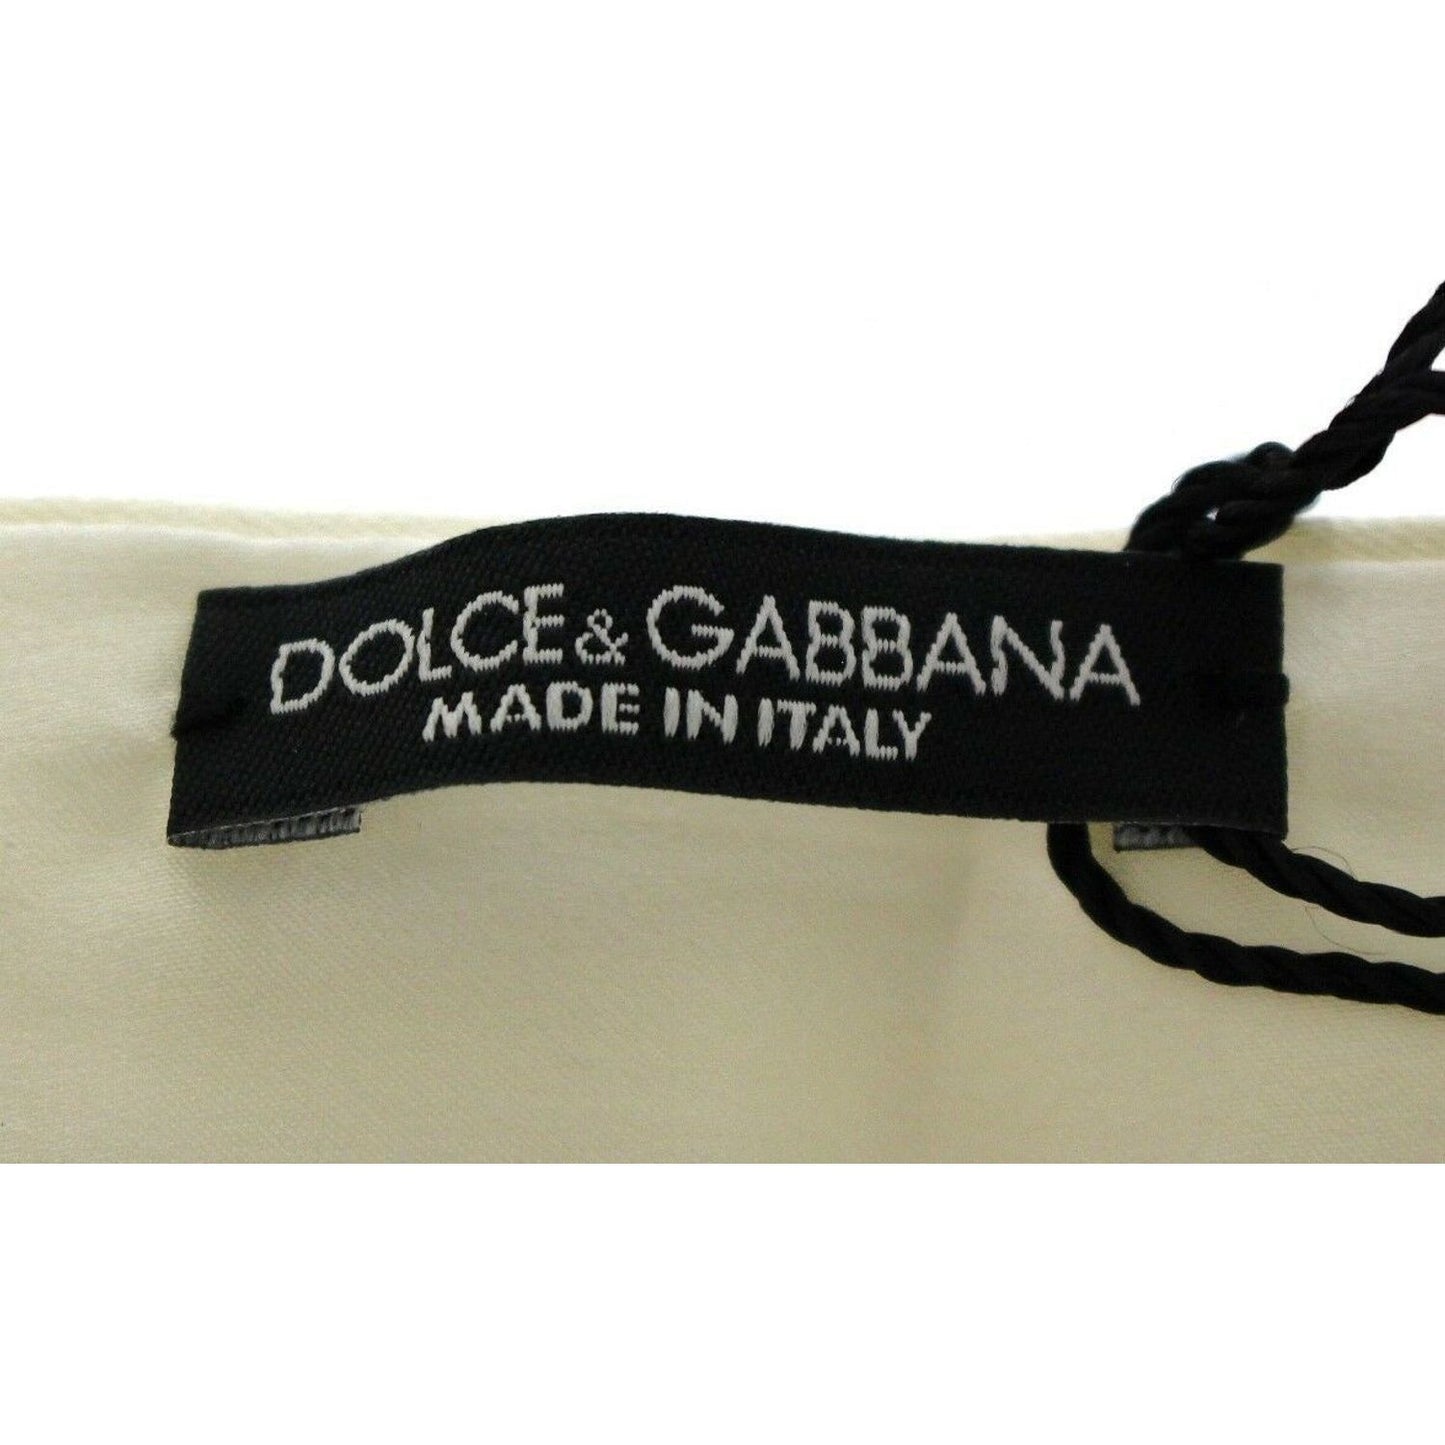 Dolce & Gabbana Exclusive White Silk Evening Cummerbund white-waist-silk-cummerbund-belt